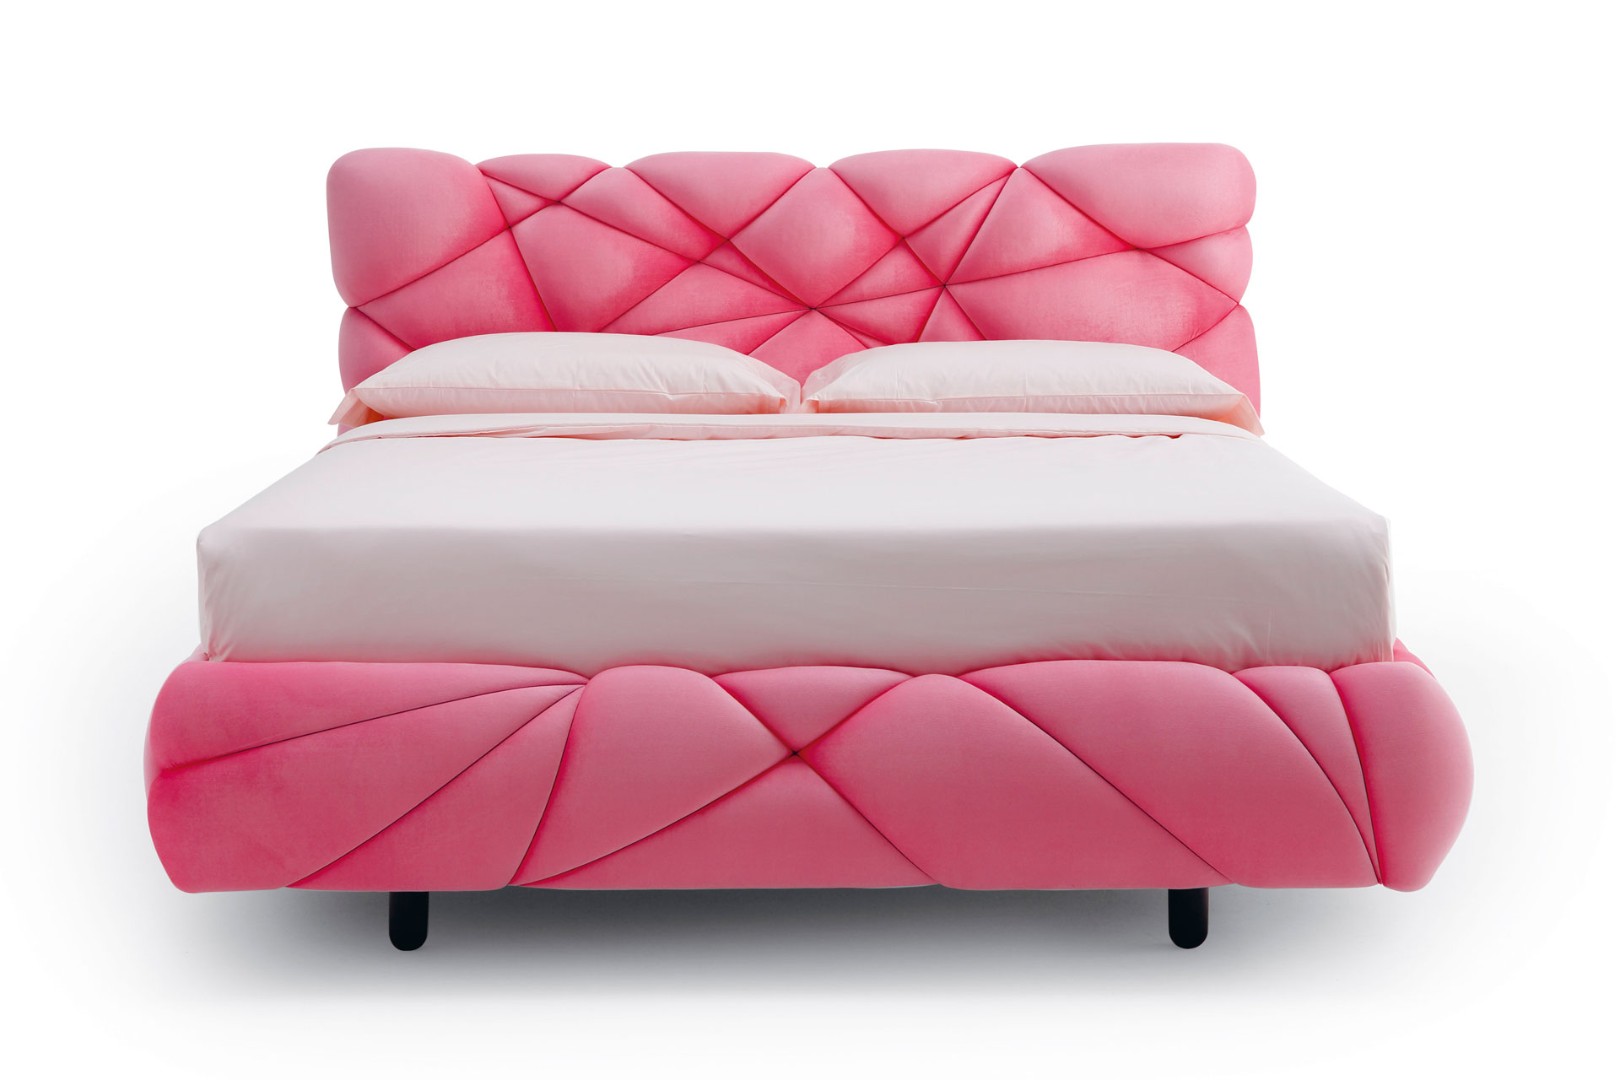 Кровать Marvin — ₽, купить у официального дилера Nicolettihome